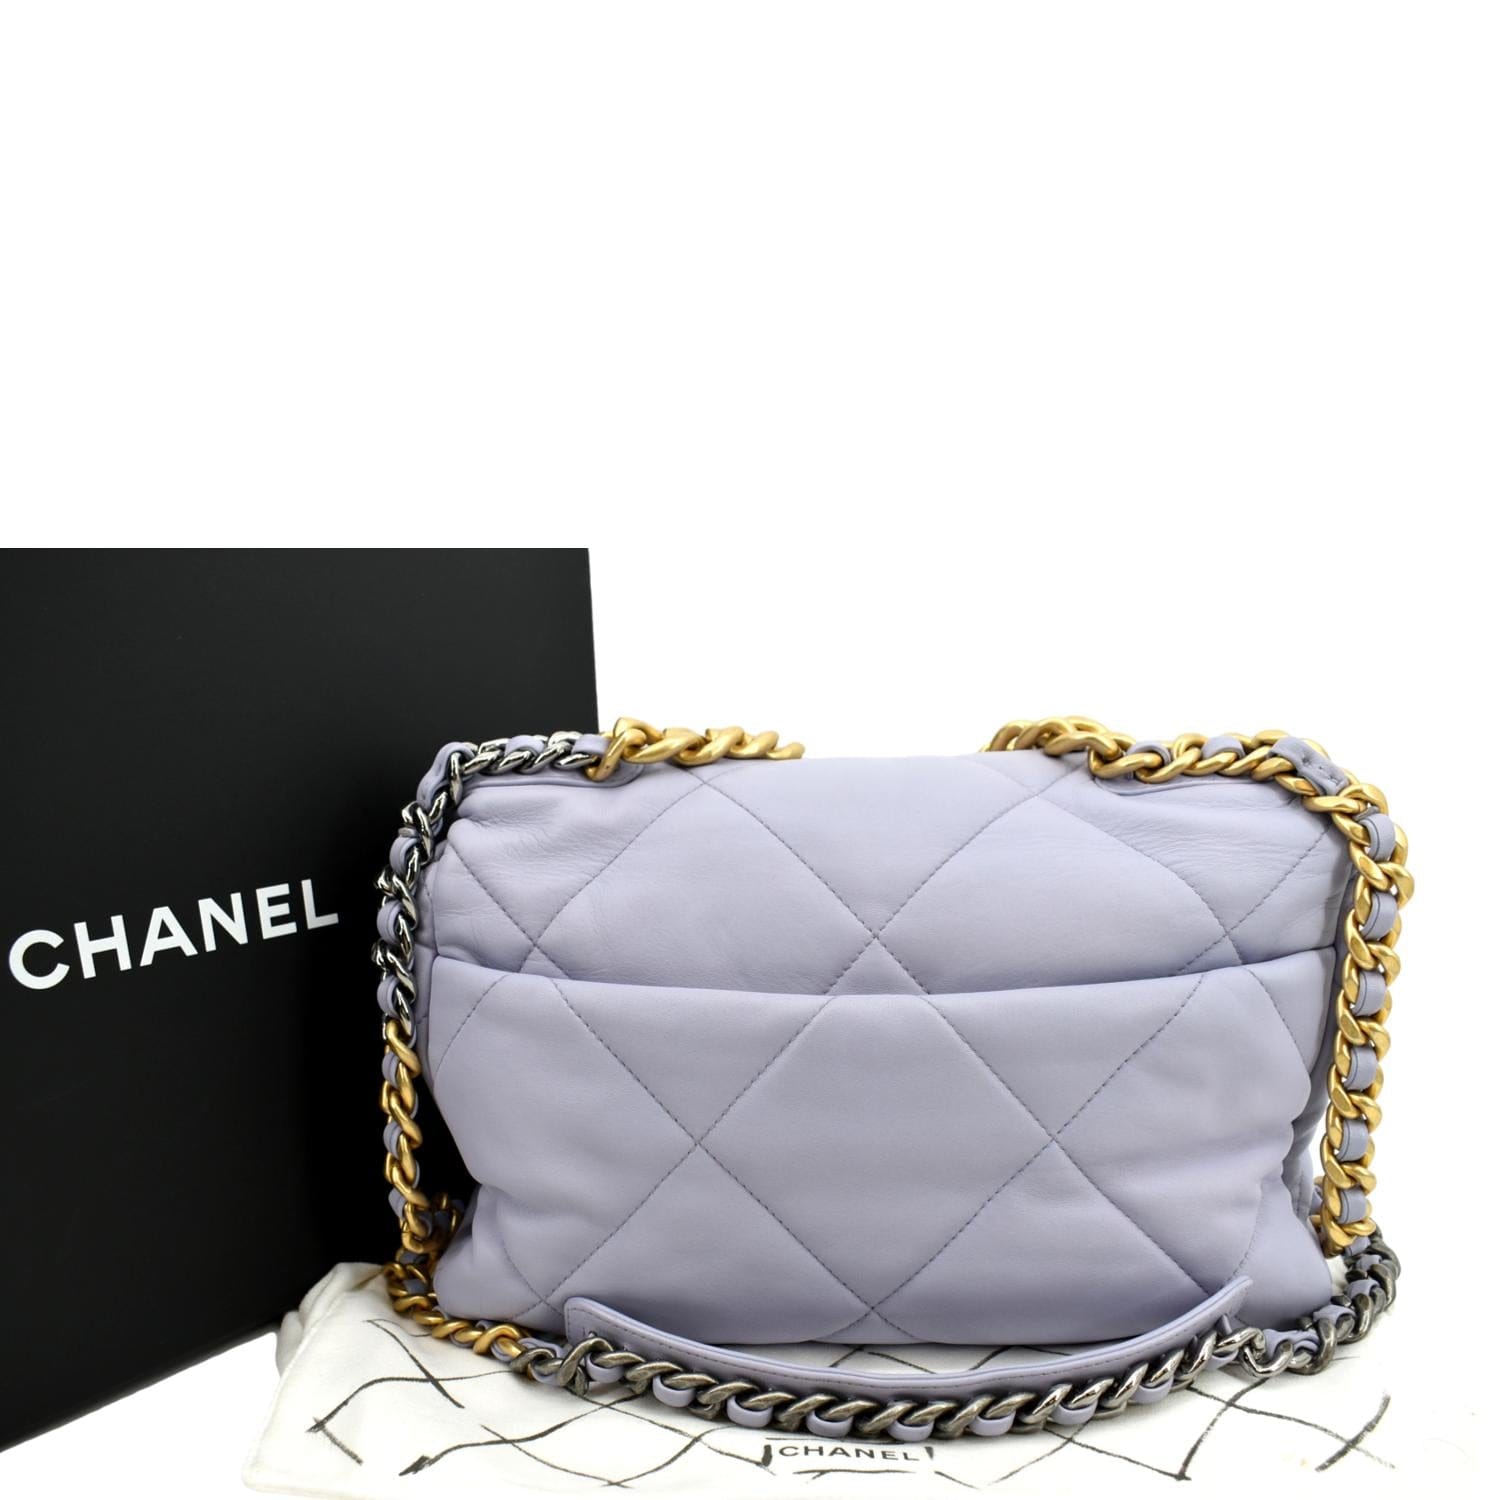 Chanel Métiers d'Art PF19 womenswear accessories #8 - Tagwalk: The